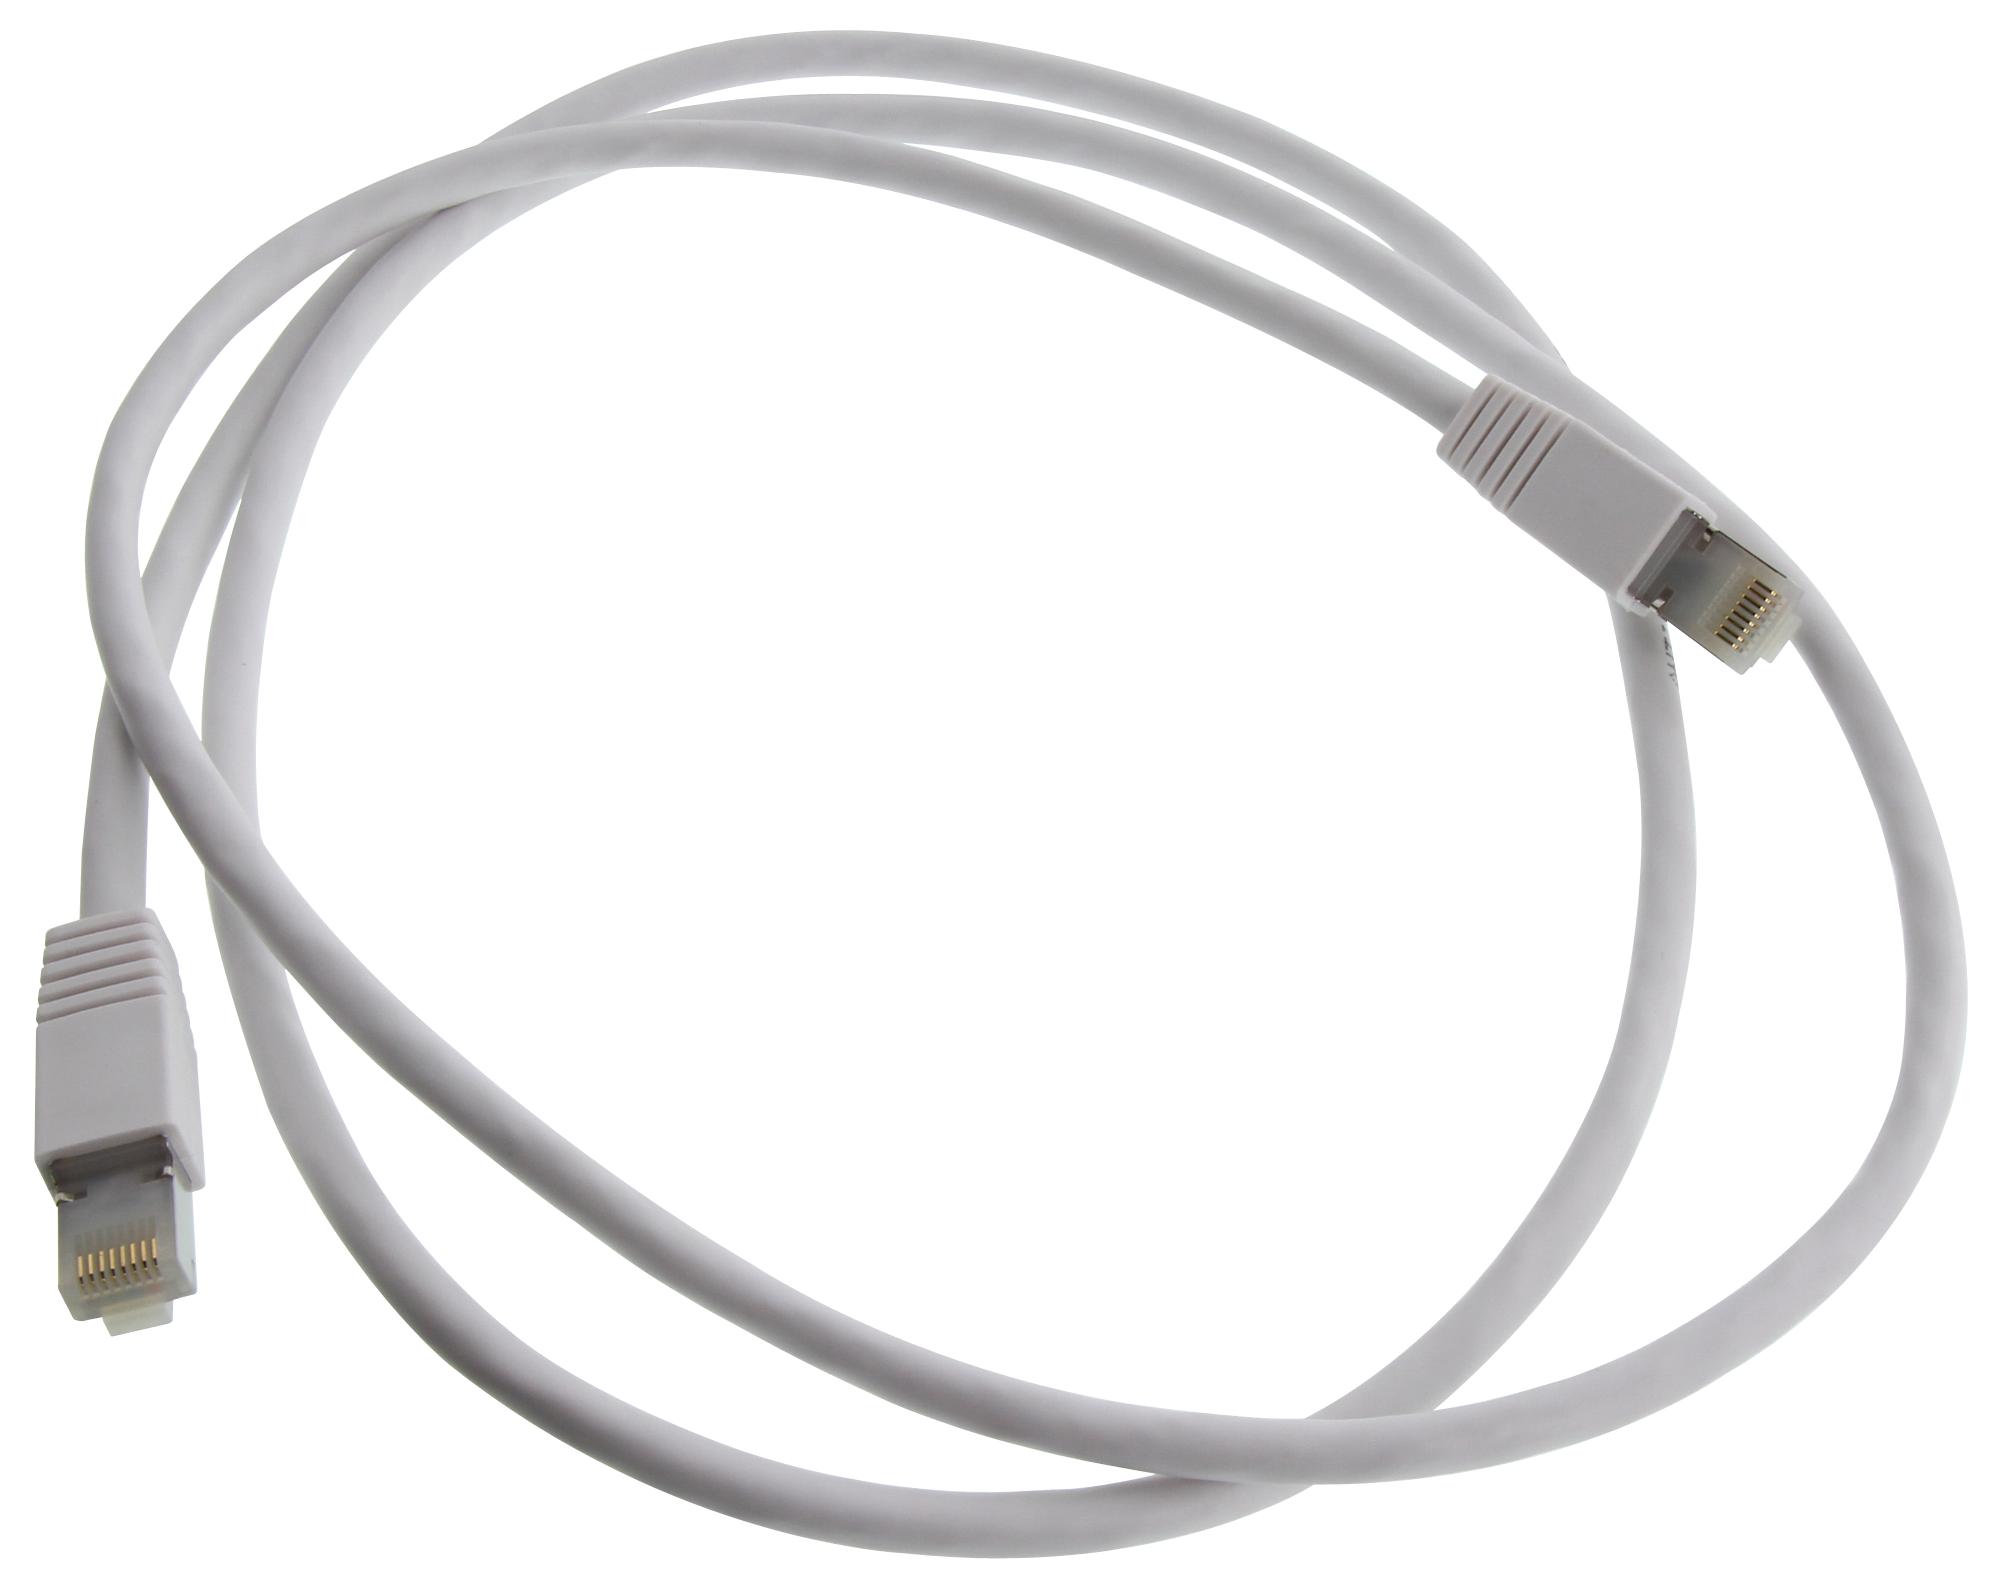 Eaton Tripp Lite N262Ab-005-Wh Enet Cable, Rj45 Plug-Plug, 5Ft, White